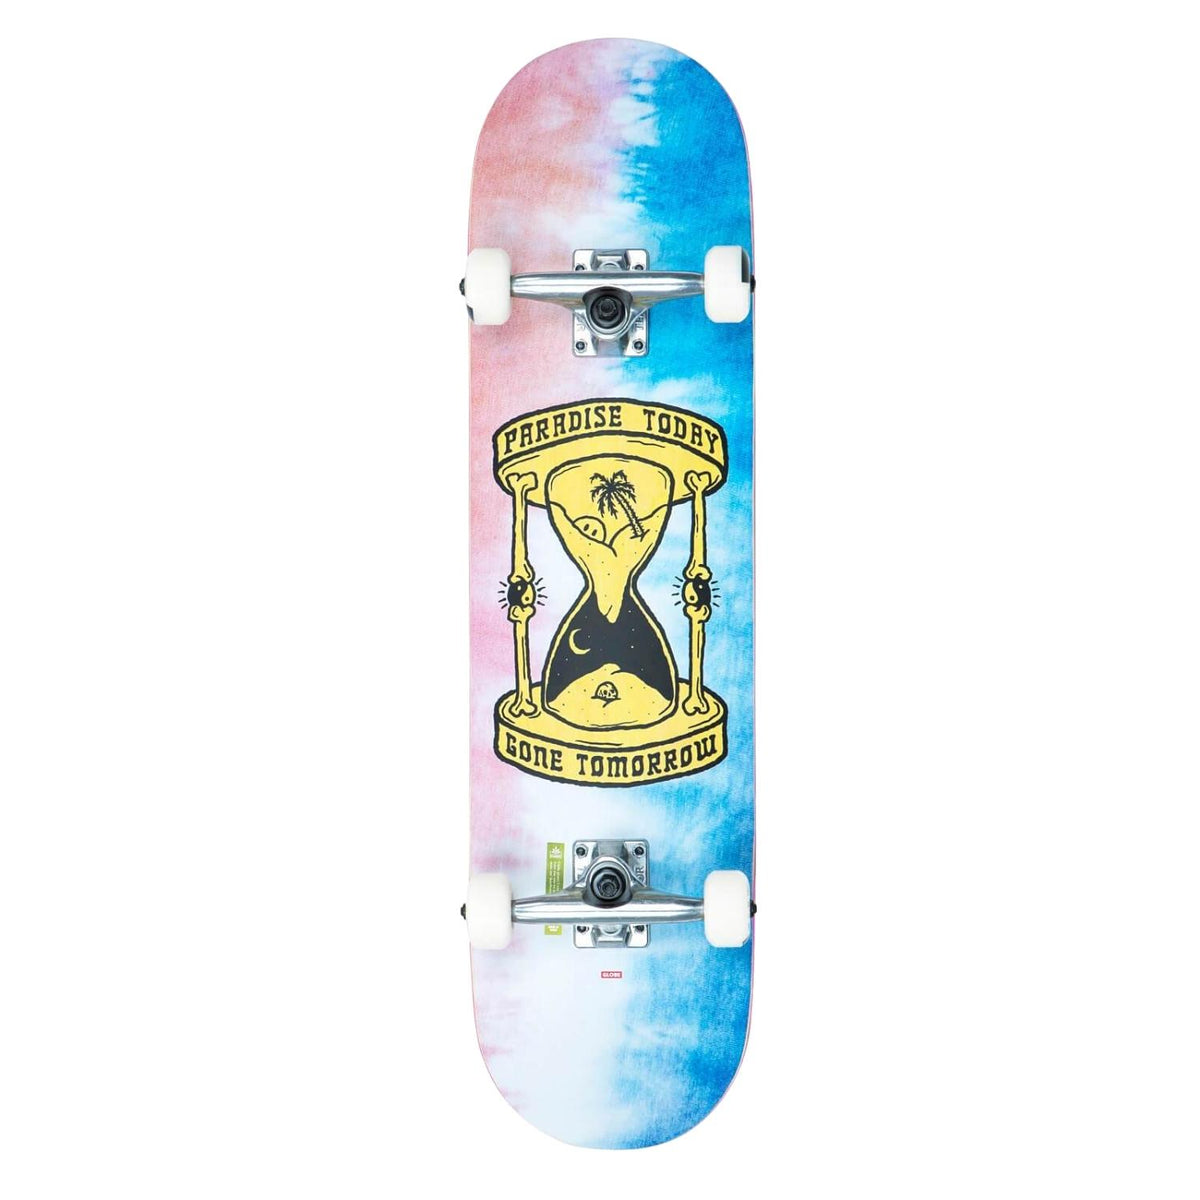 Globe G1 Gone Tomorrow Complete Skateboard - Blue/Pink Dye - Complete Skateboard by Globe 8.0 inch